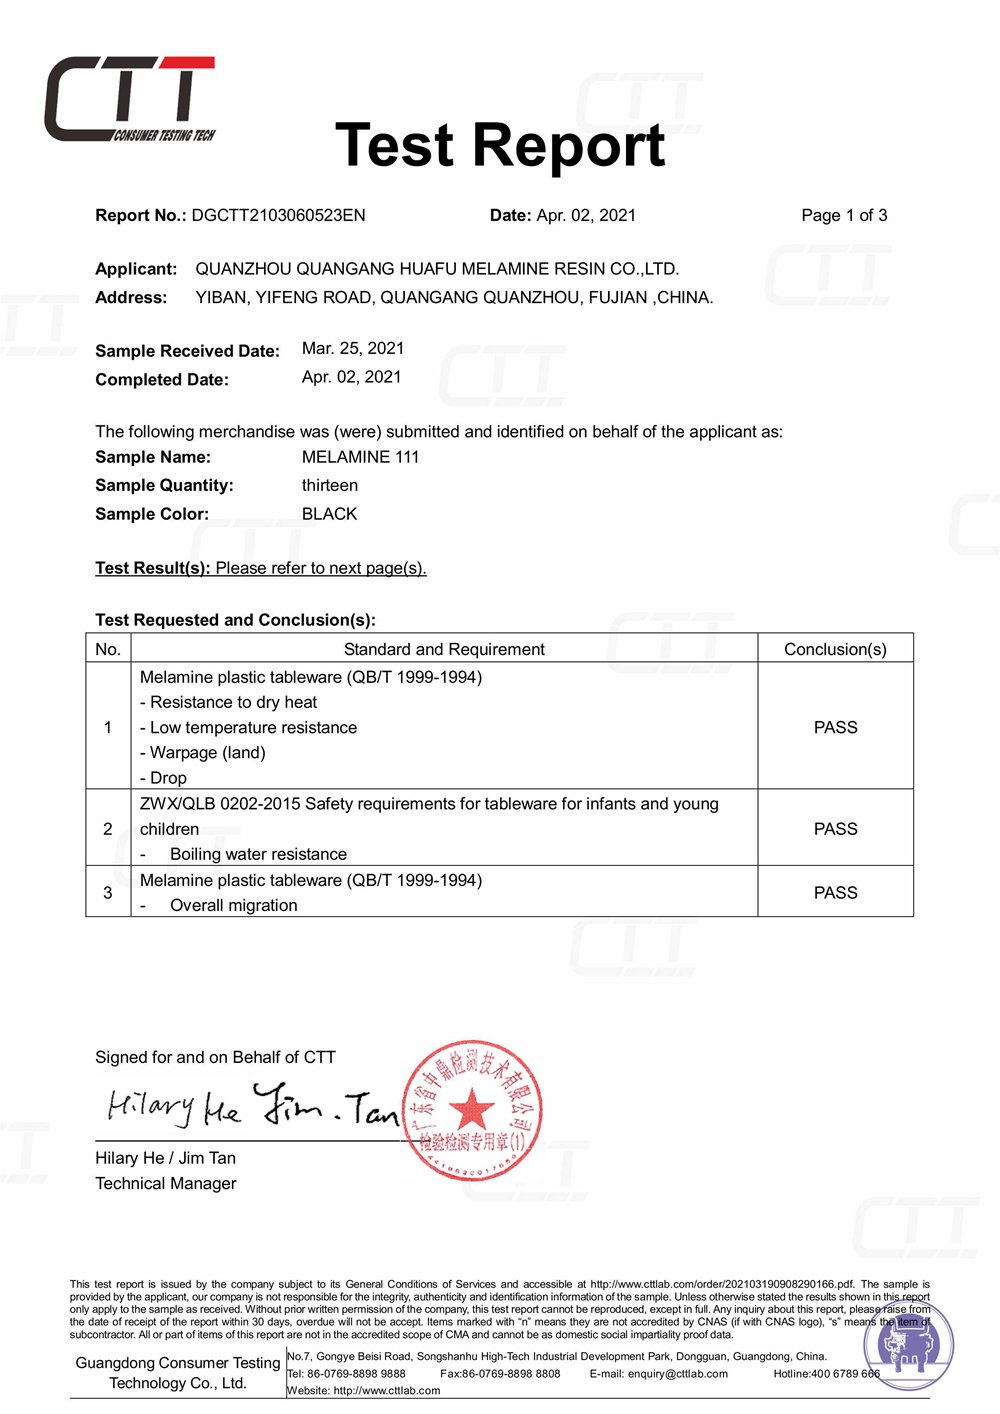 Huafu Chemicals CTT Certificate in 2021